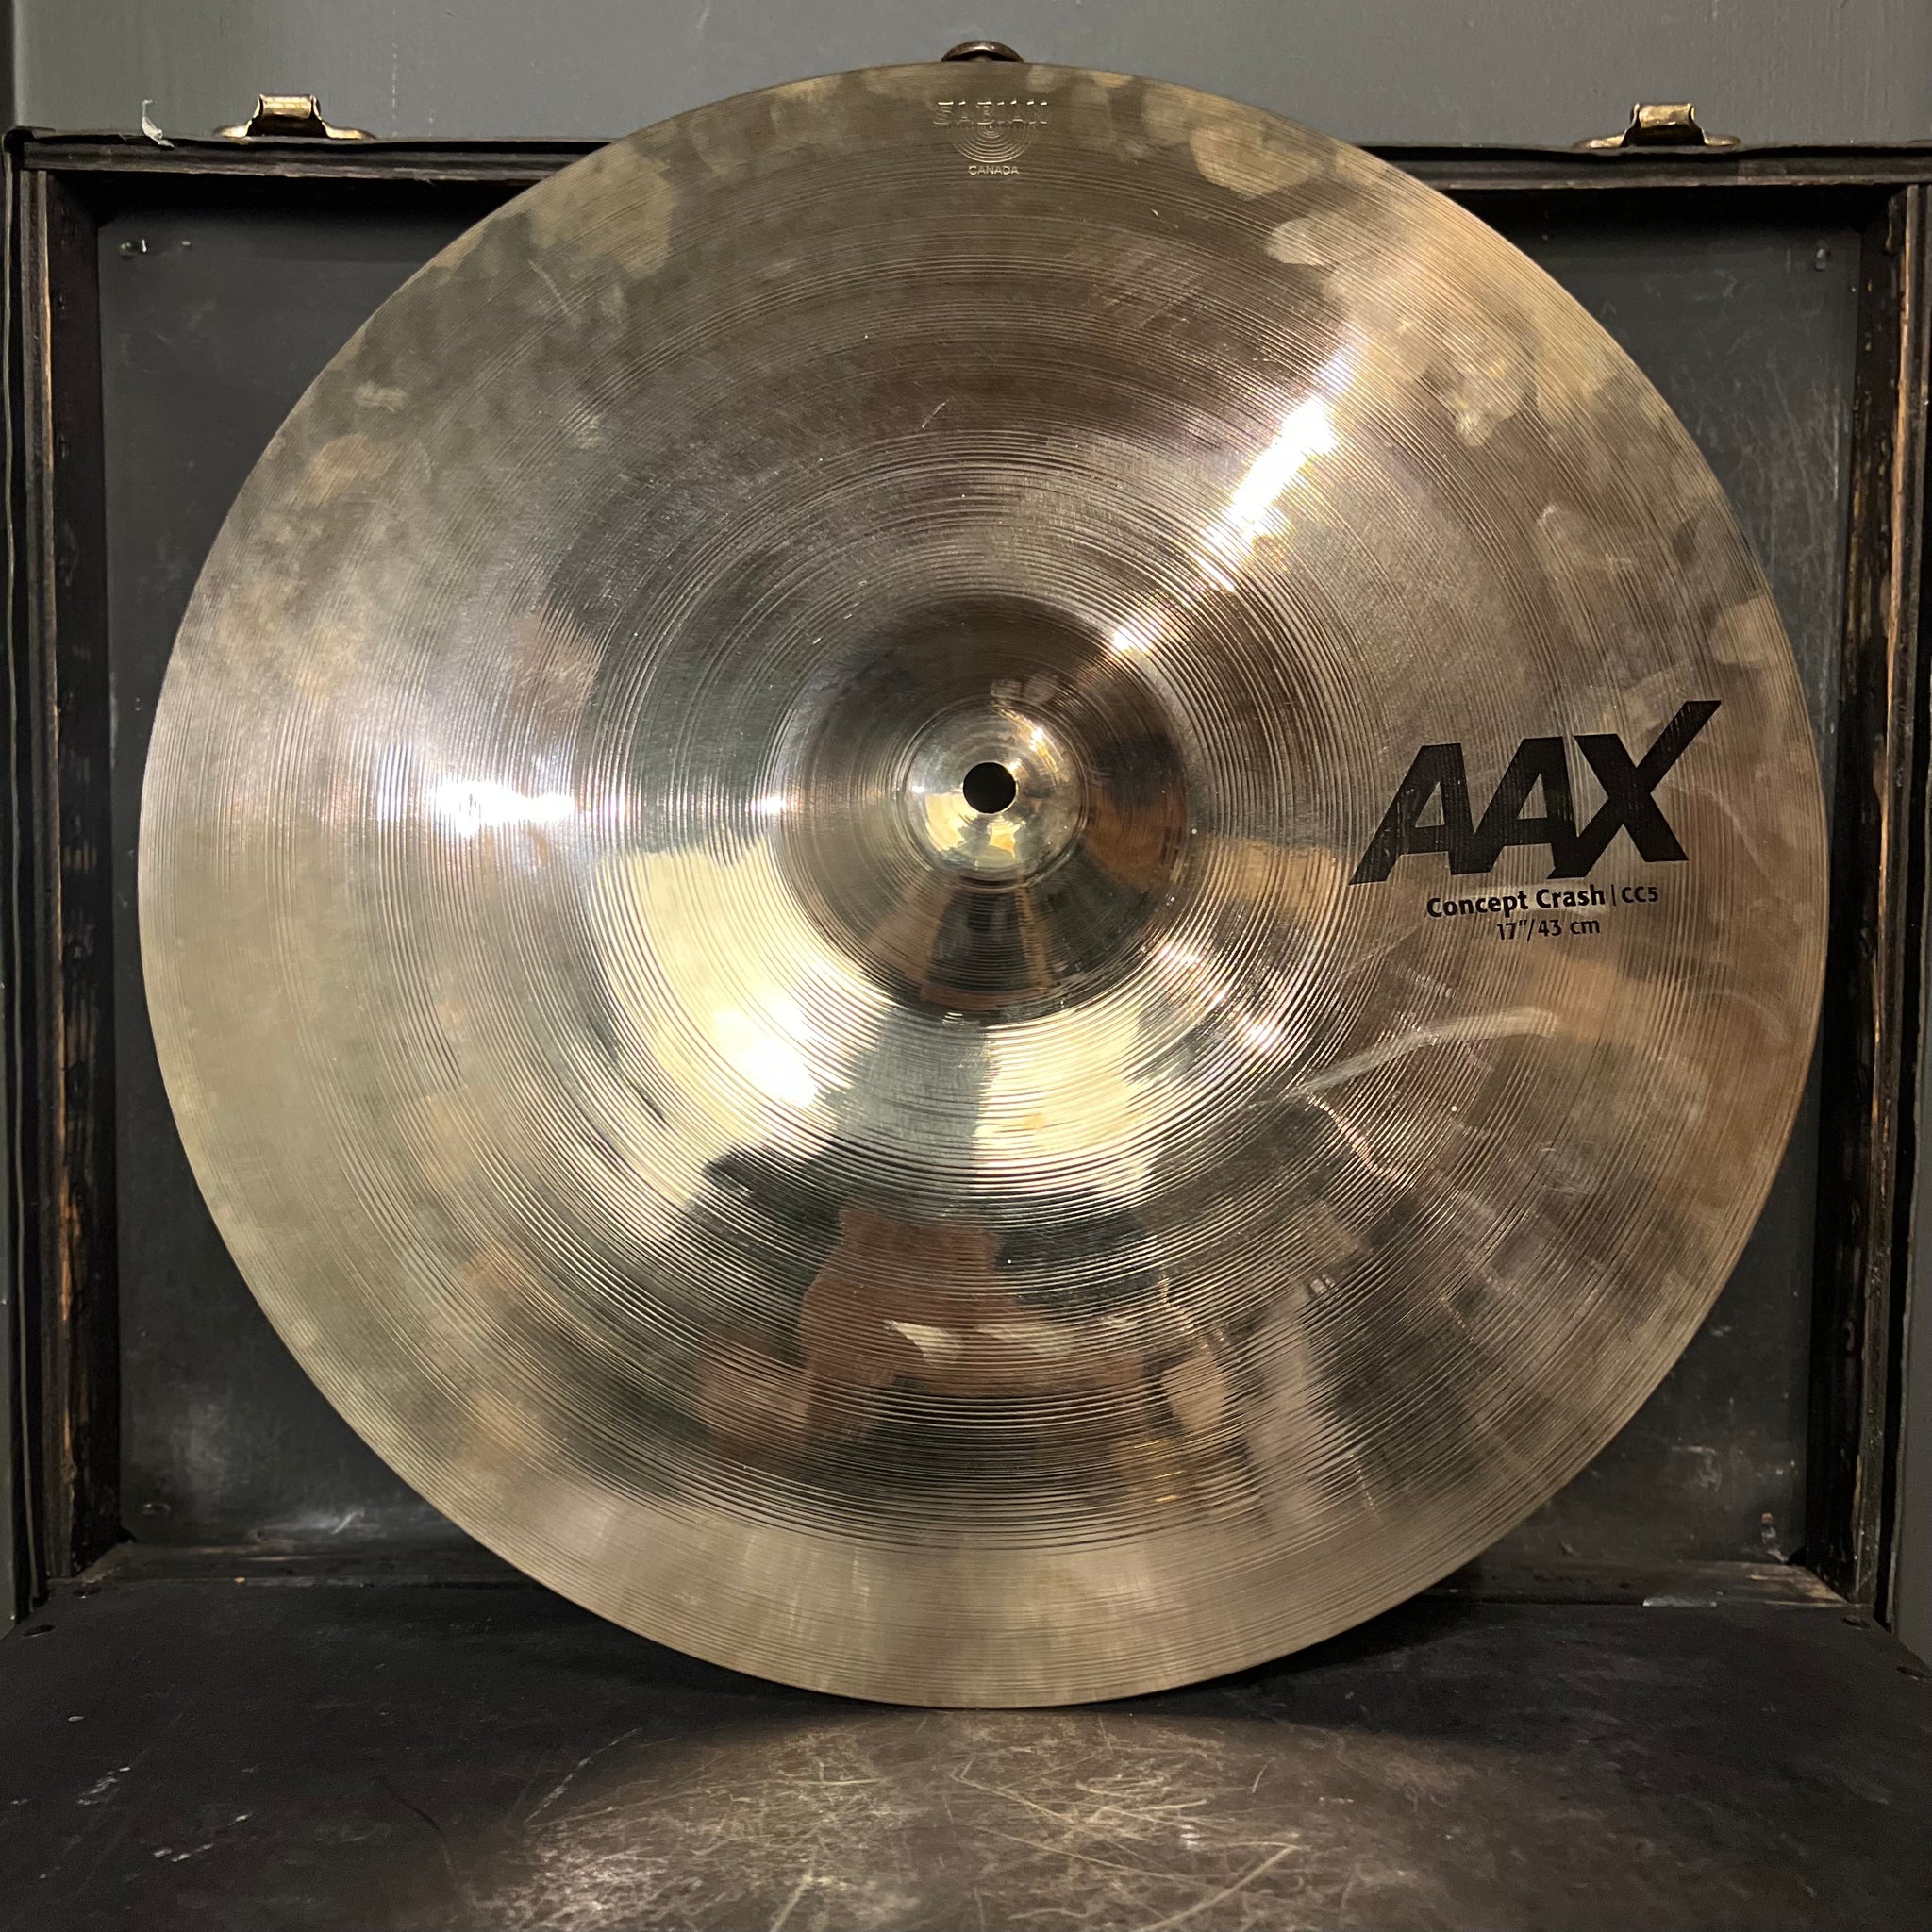 USED Sabian 17" AAX Concept Crash Cymbal - 1078g